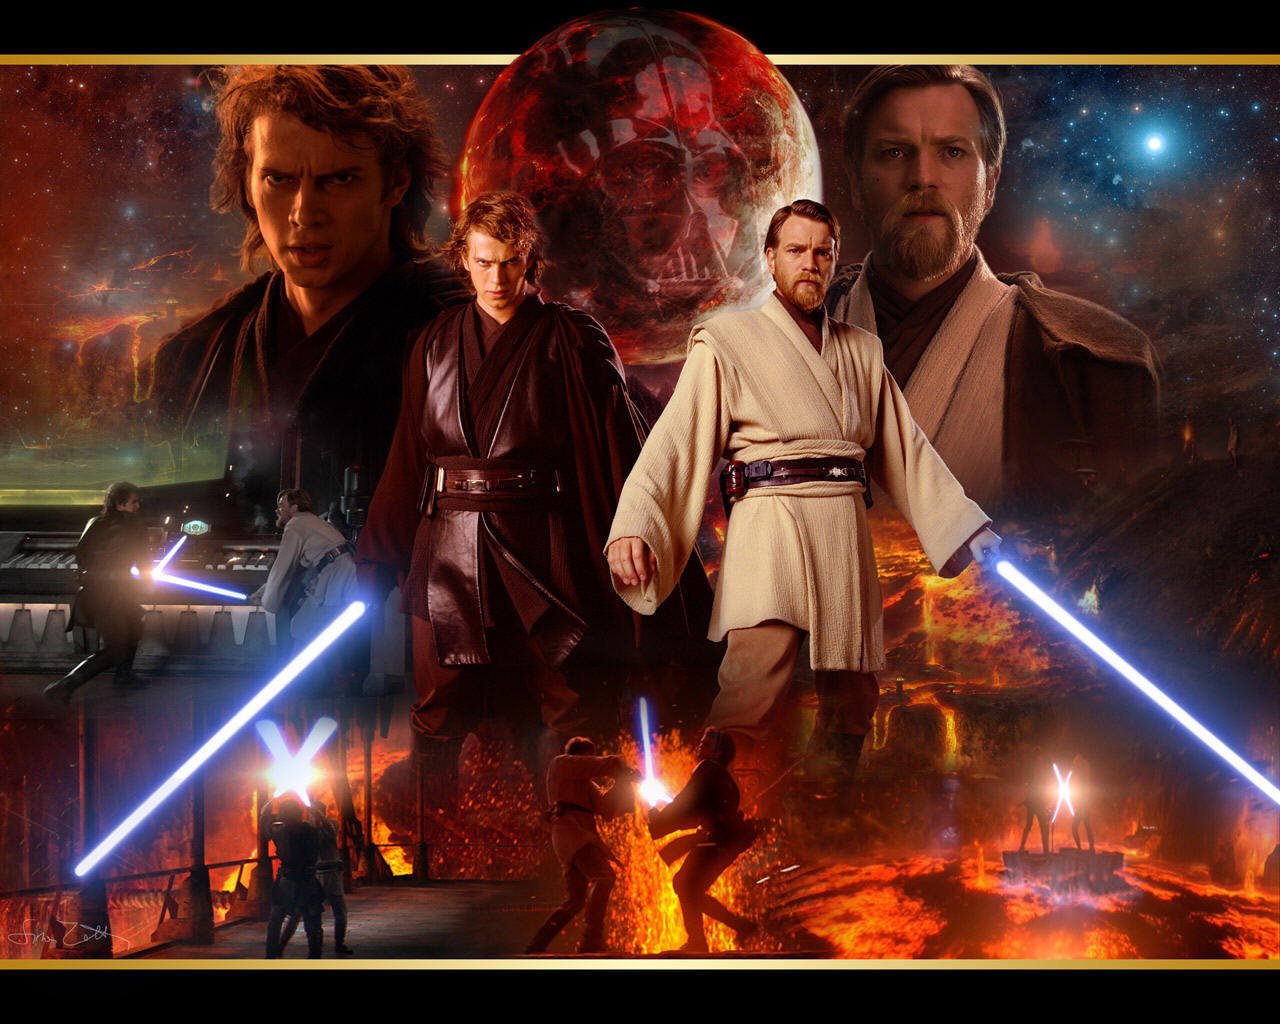 Obi Wan and Anakin   obi wan kenobi and Anakin skywalker Wallpaper